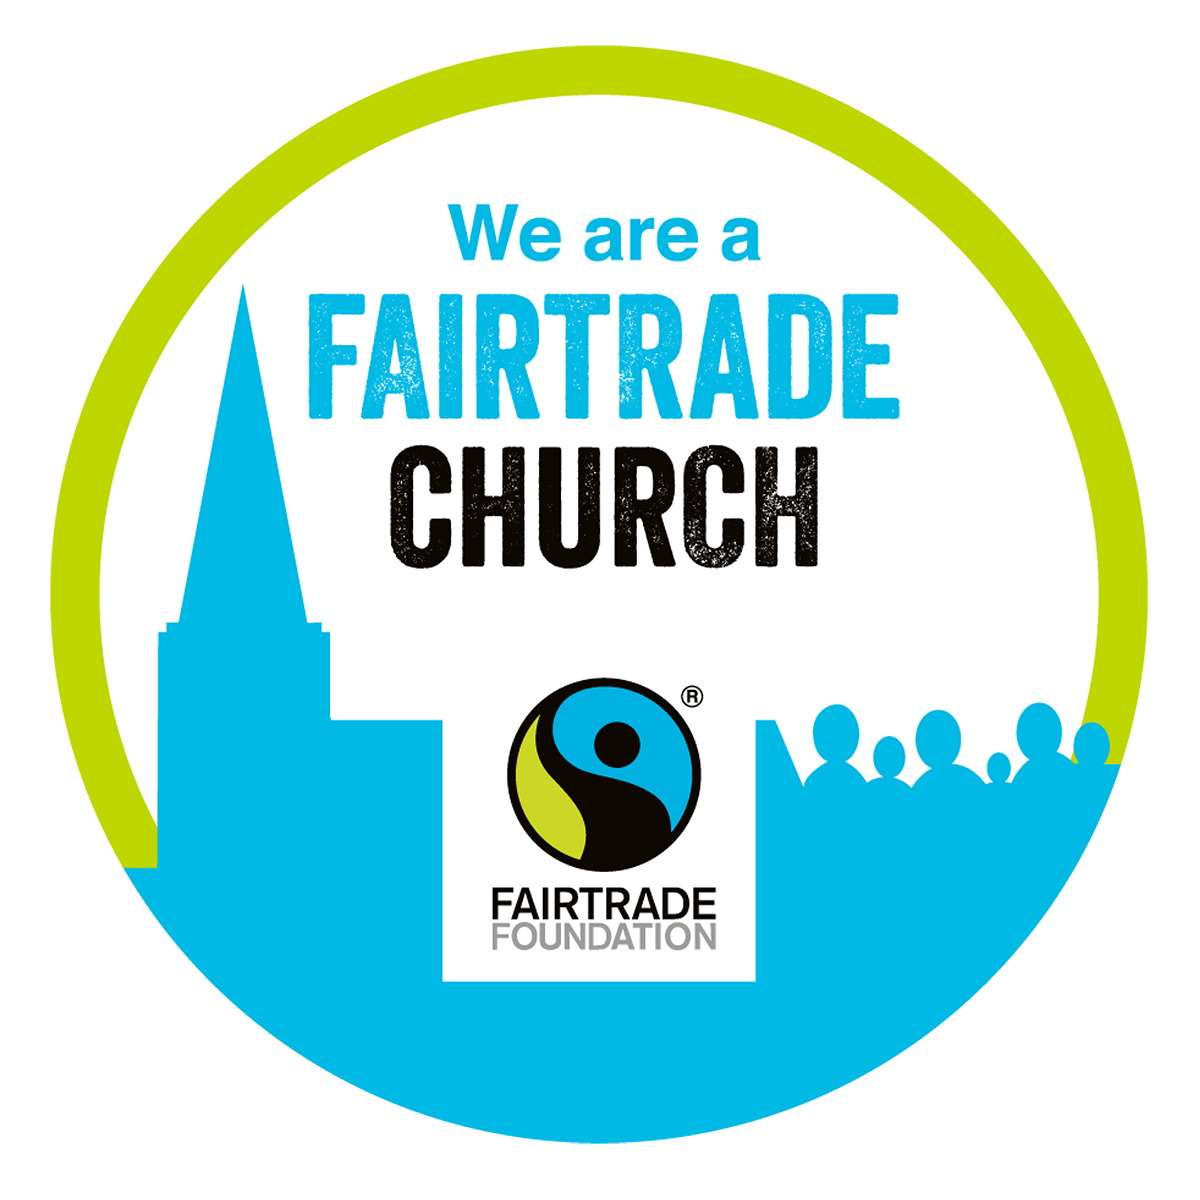 We are a Fairtrade Church - logo.